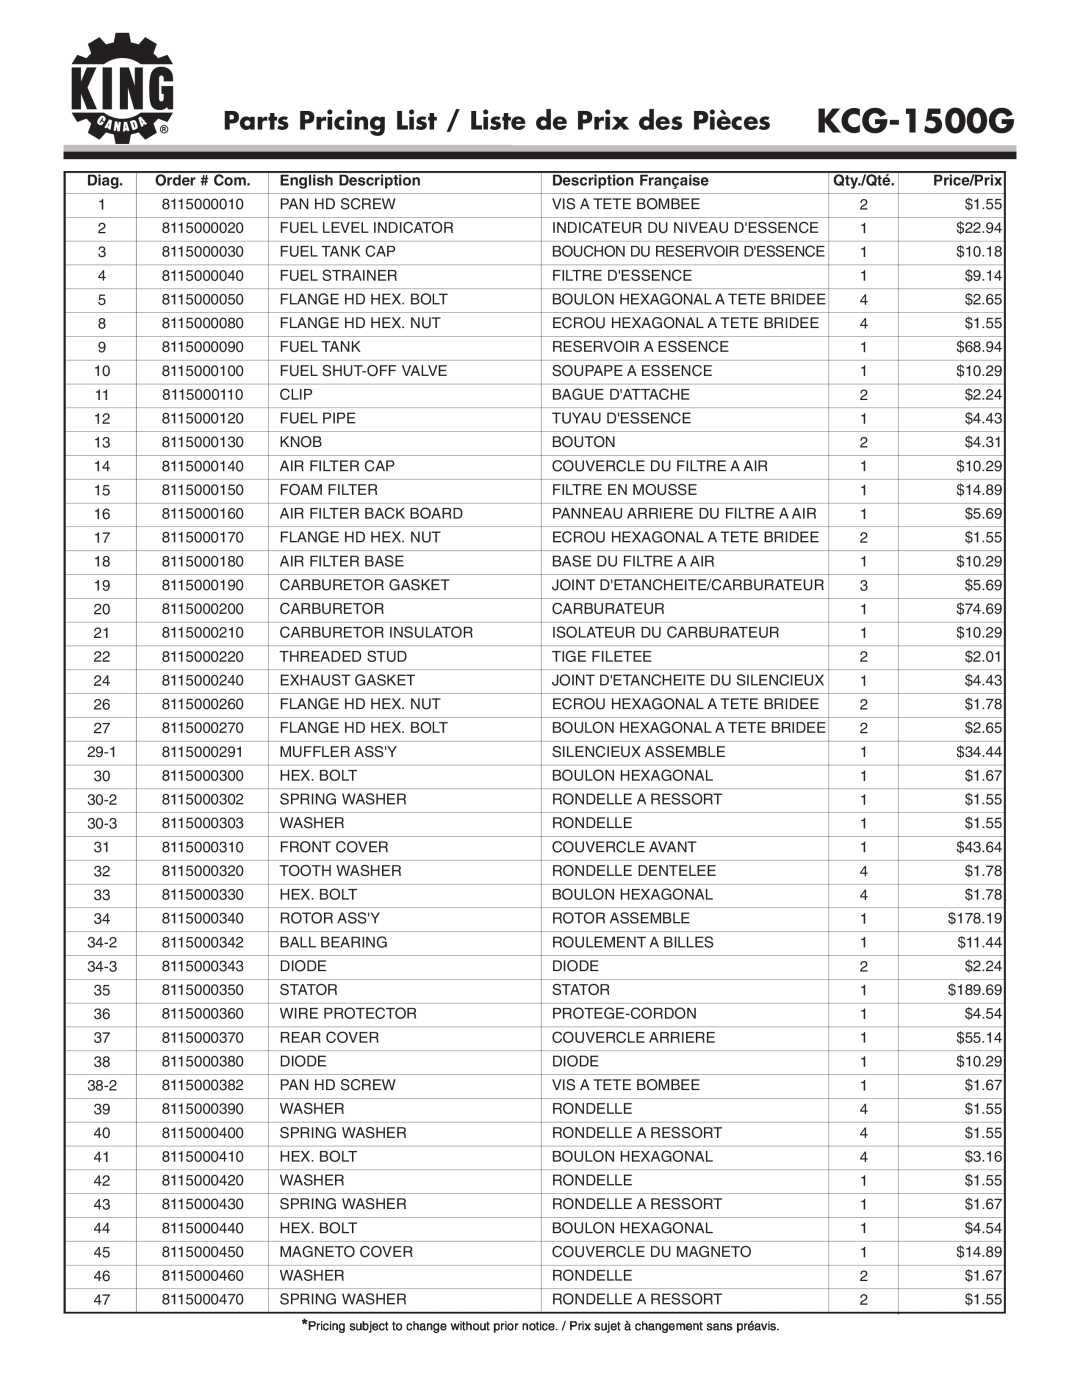 King Canada KCG-1500G Parts Pricing List / Liste de Prix des Pièces, Diag, English Description, Description Française 